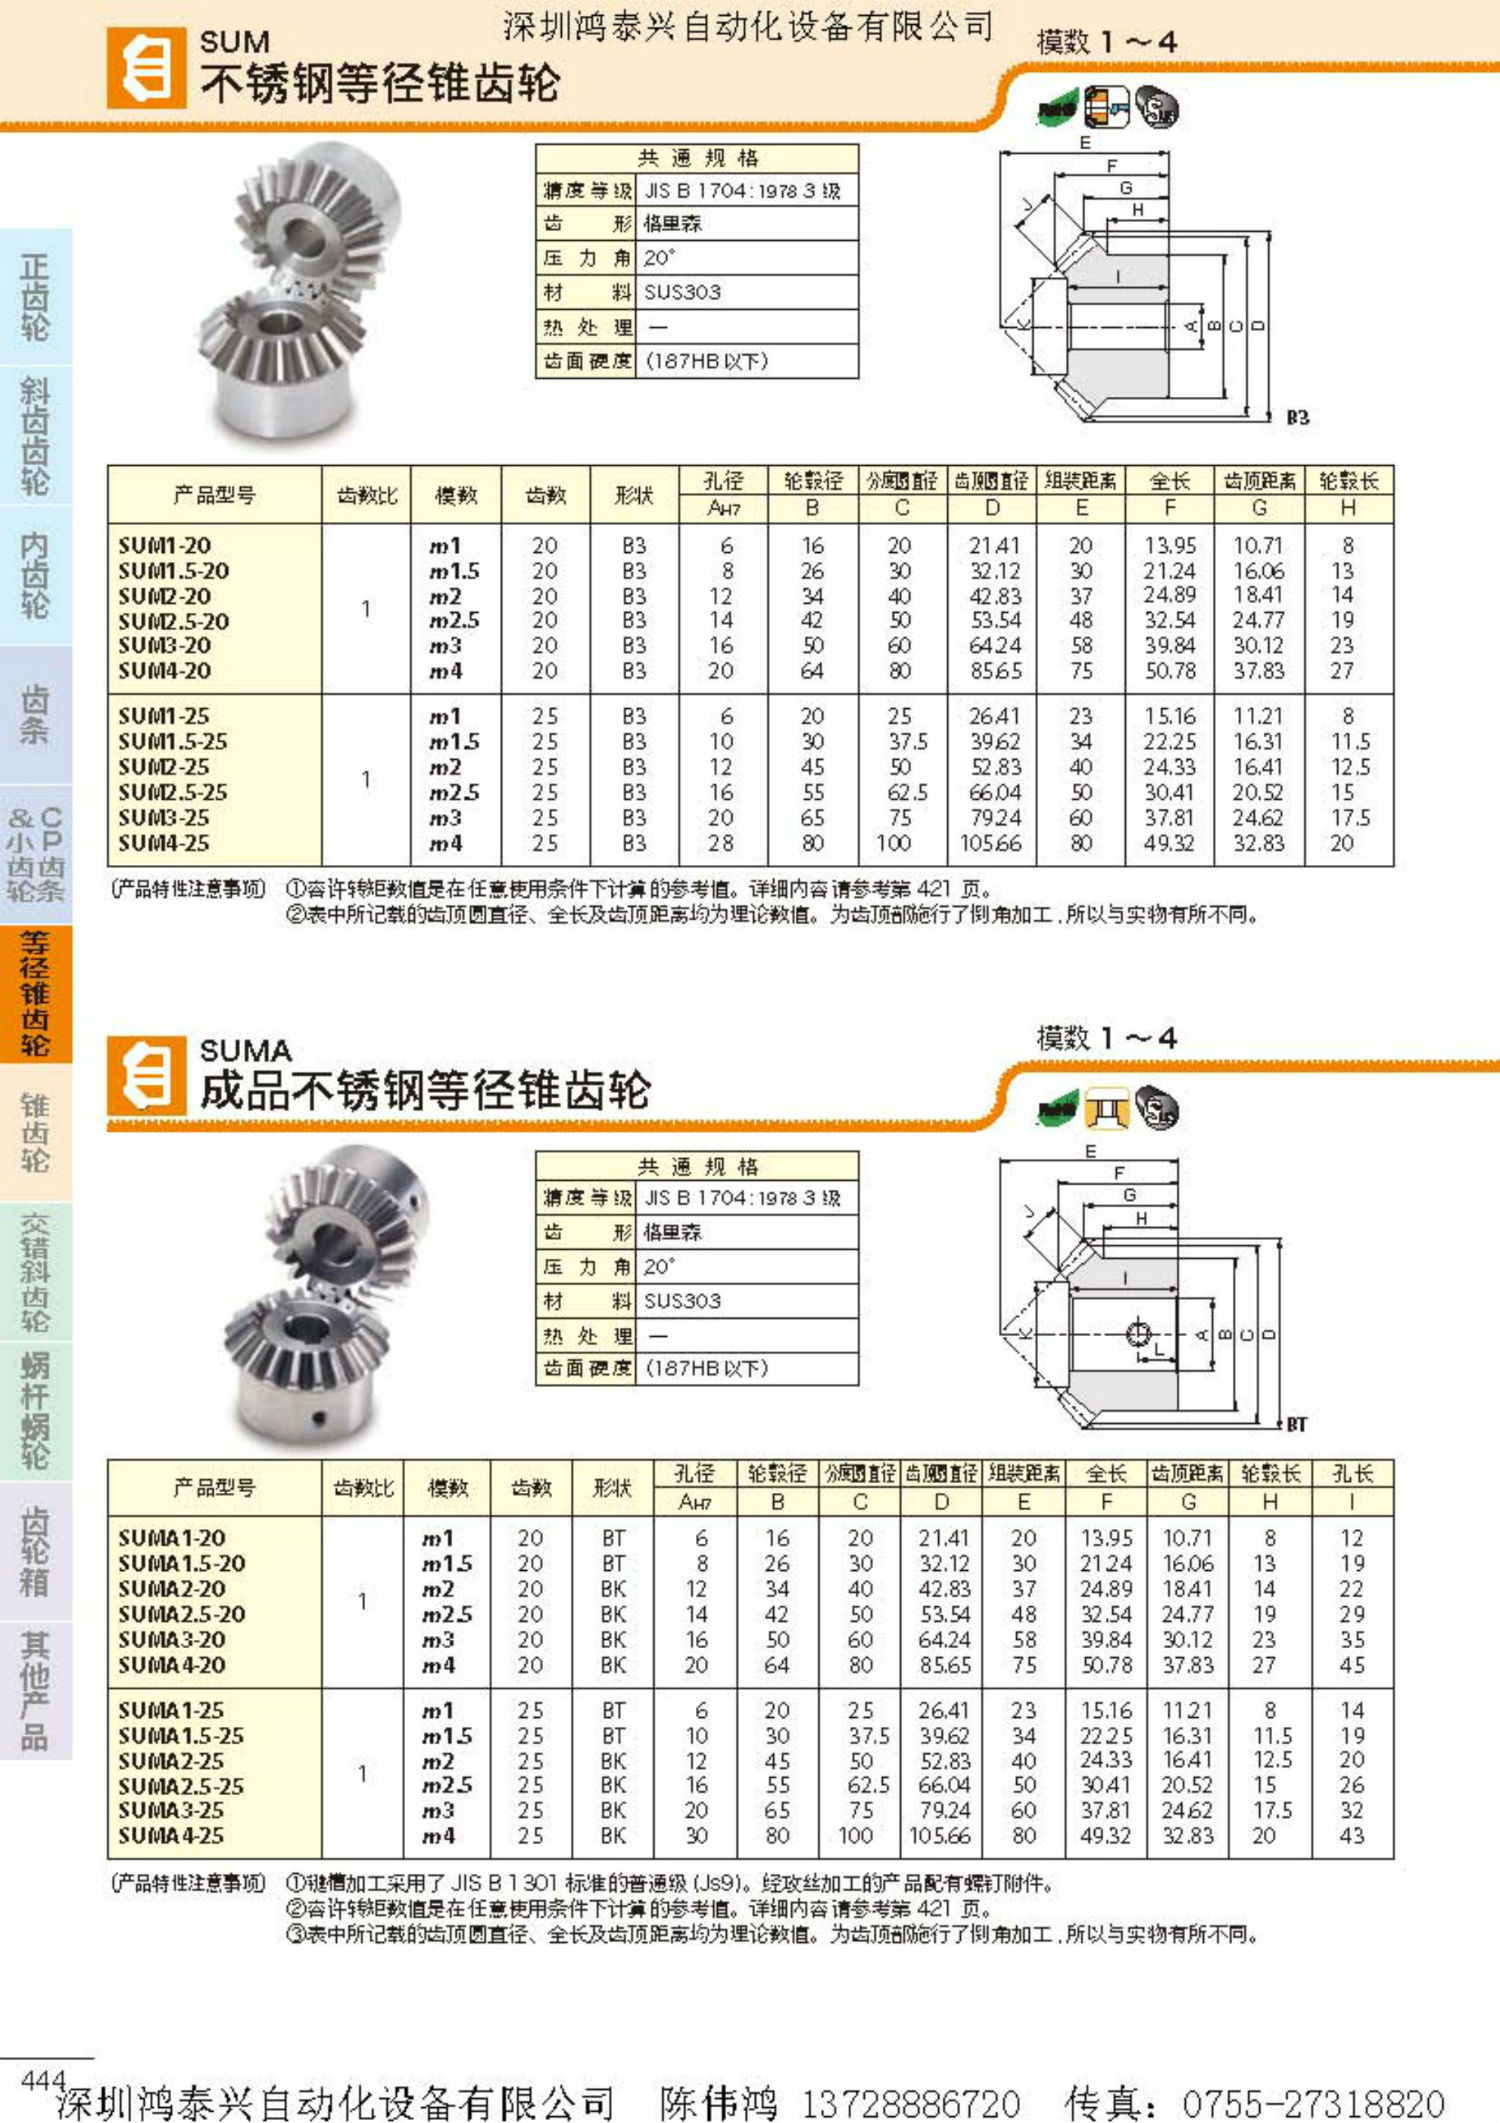   产品名称: khk成品不锈钢等径锥齿轮suma系列 产品规格